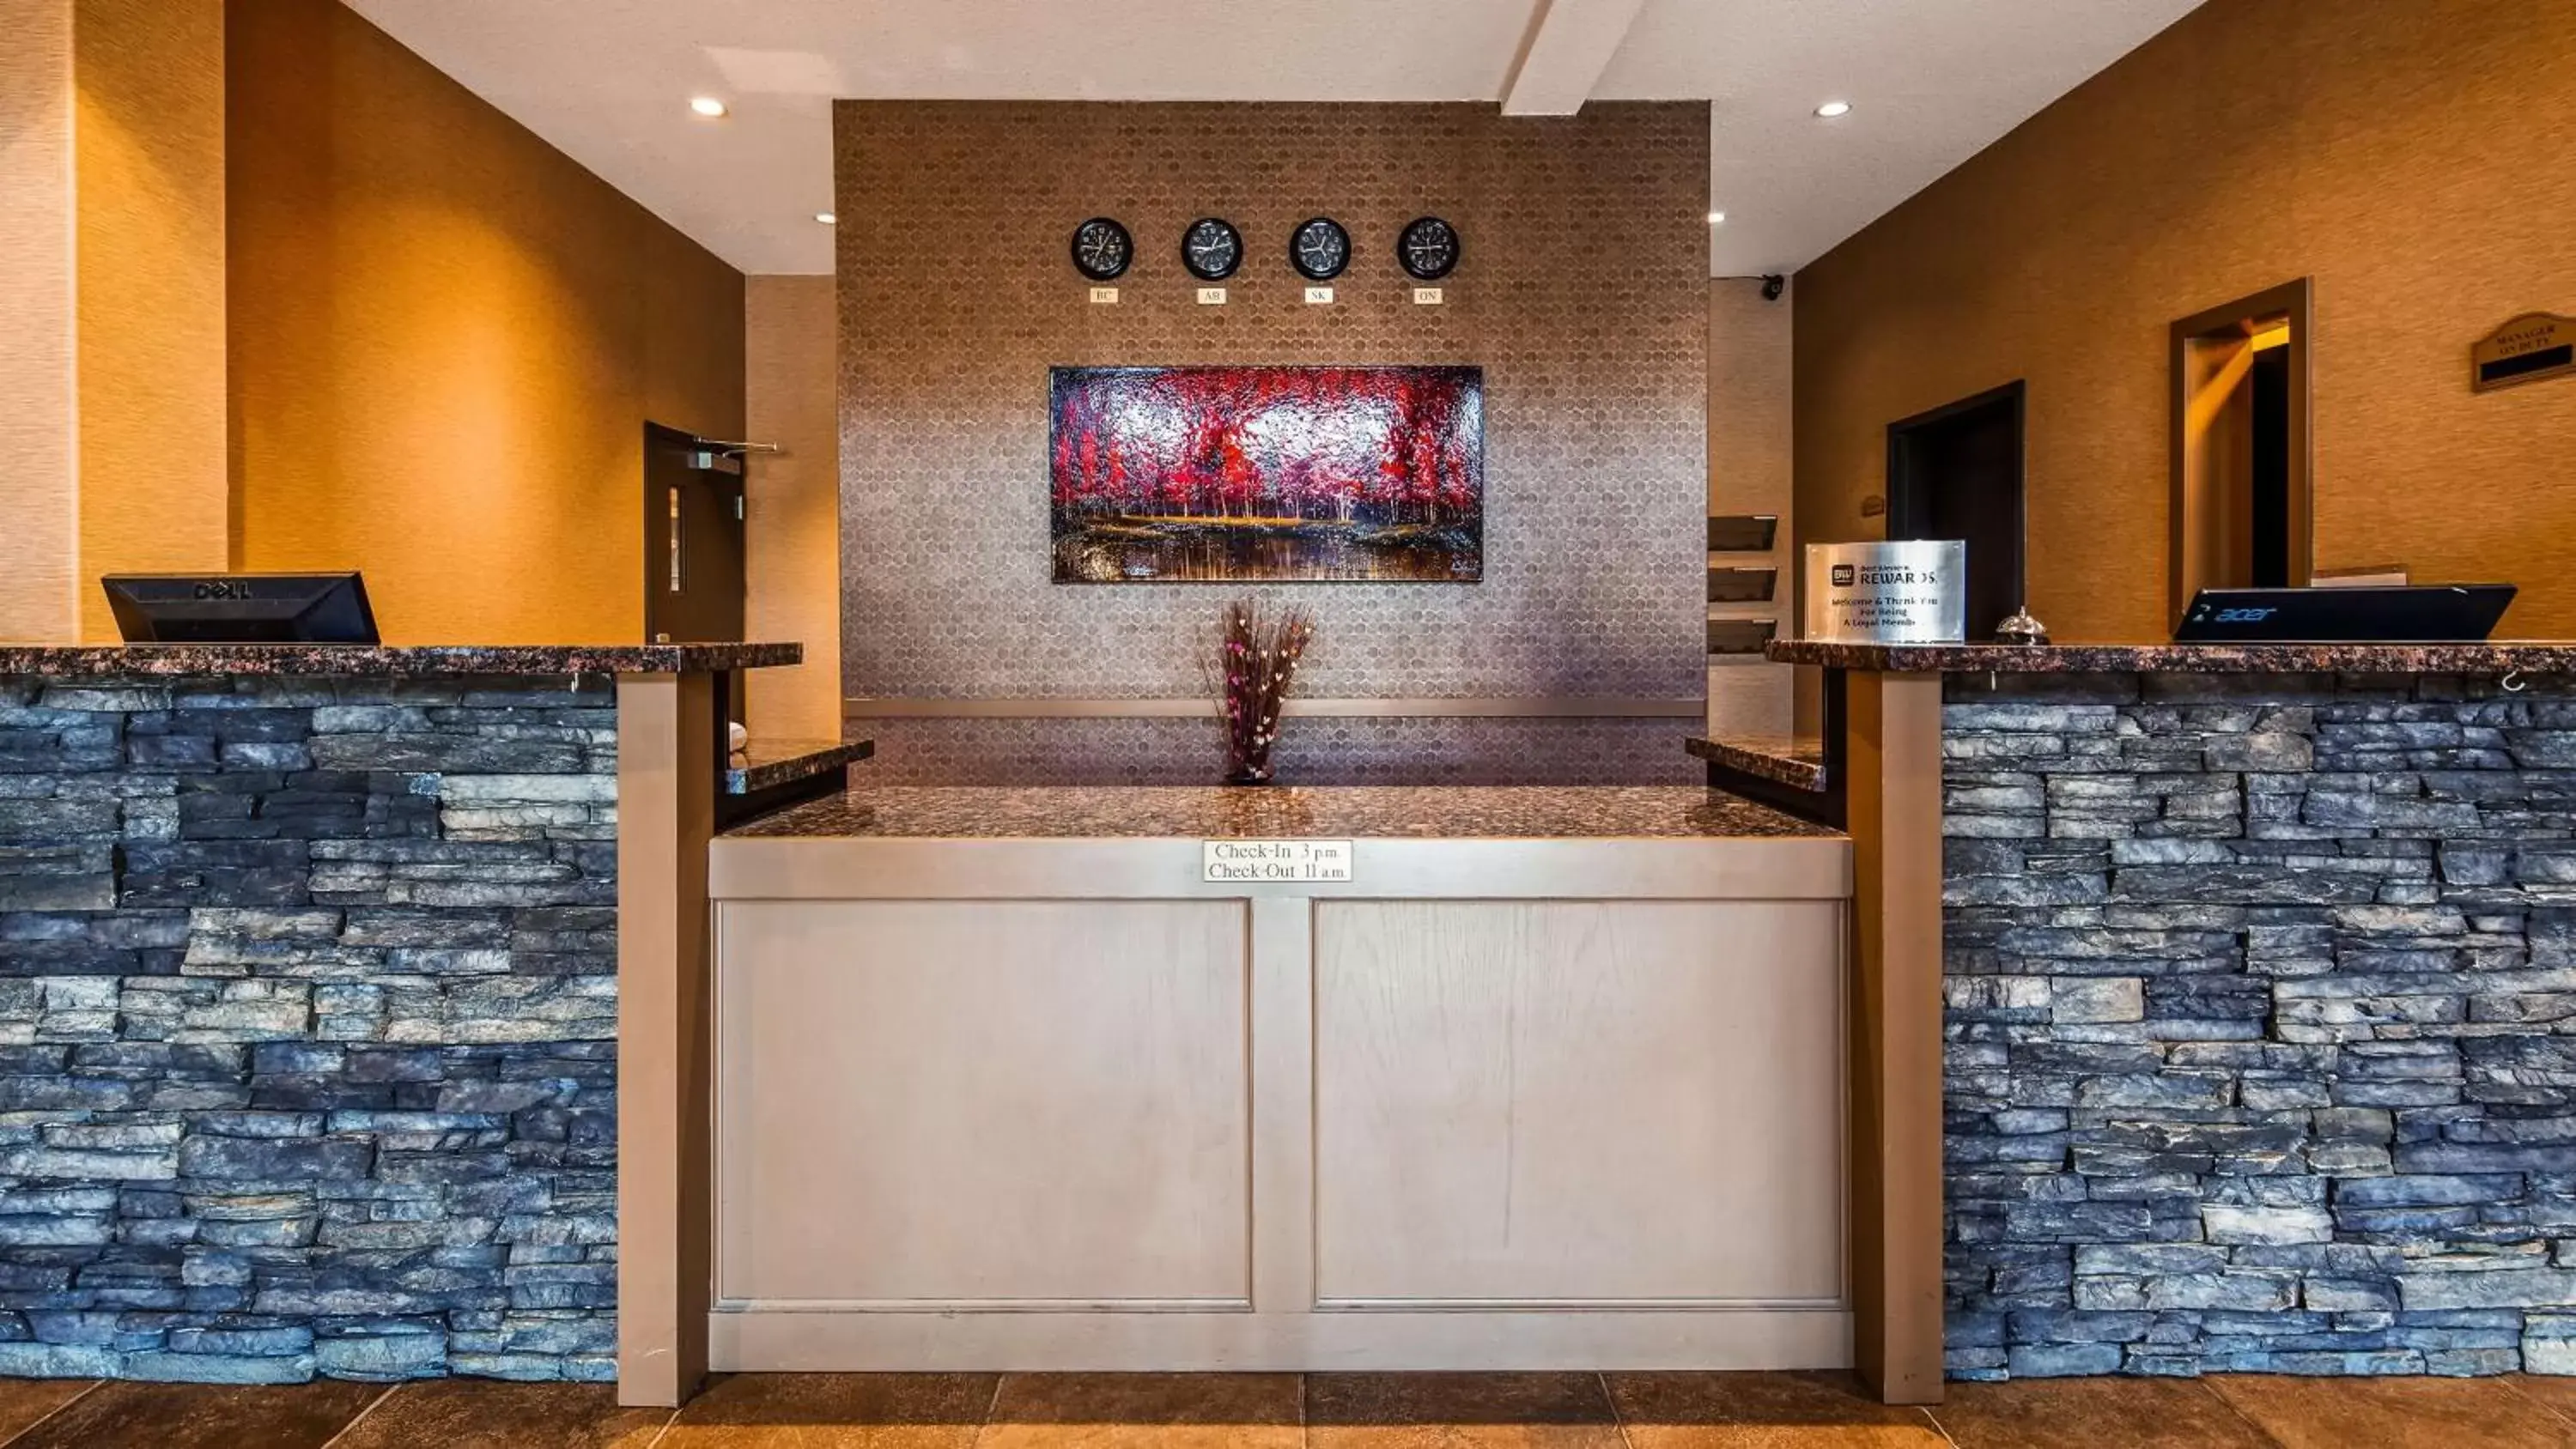 Lobby or reception, Lobby/Reception in Best Western Plus Estevan Inn & Suites